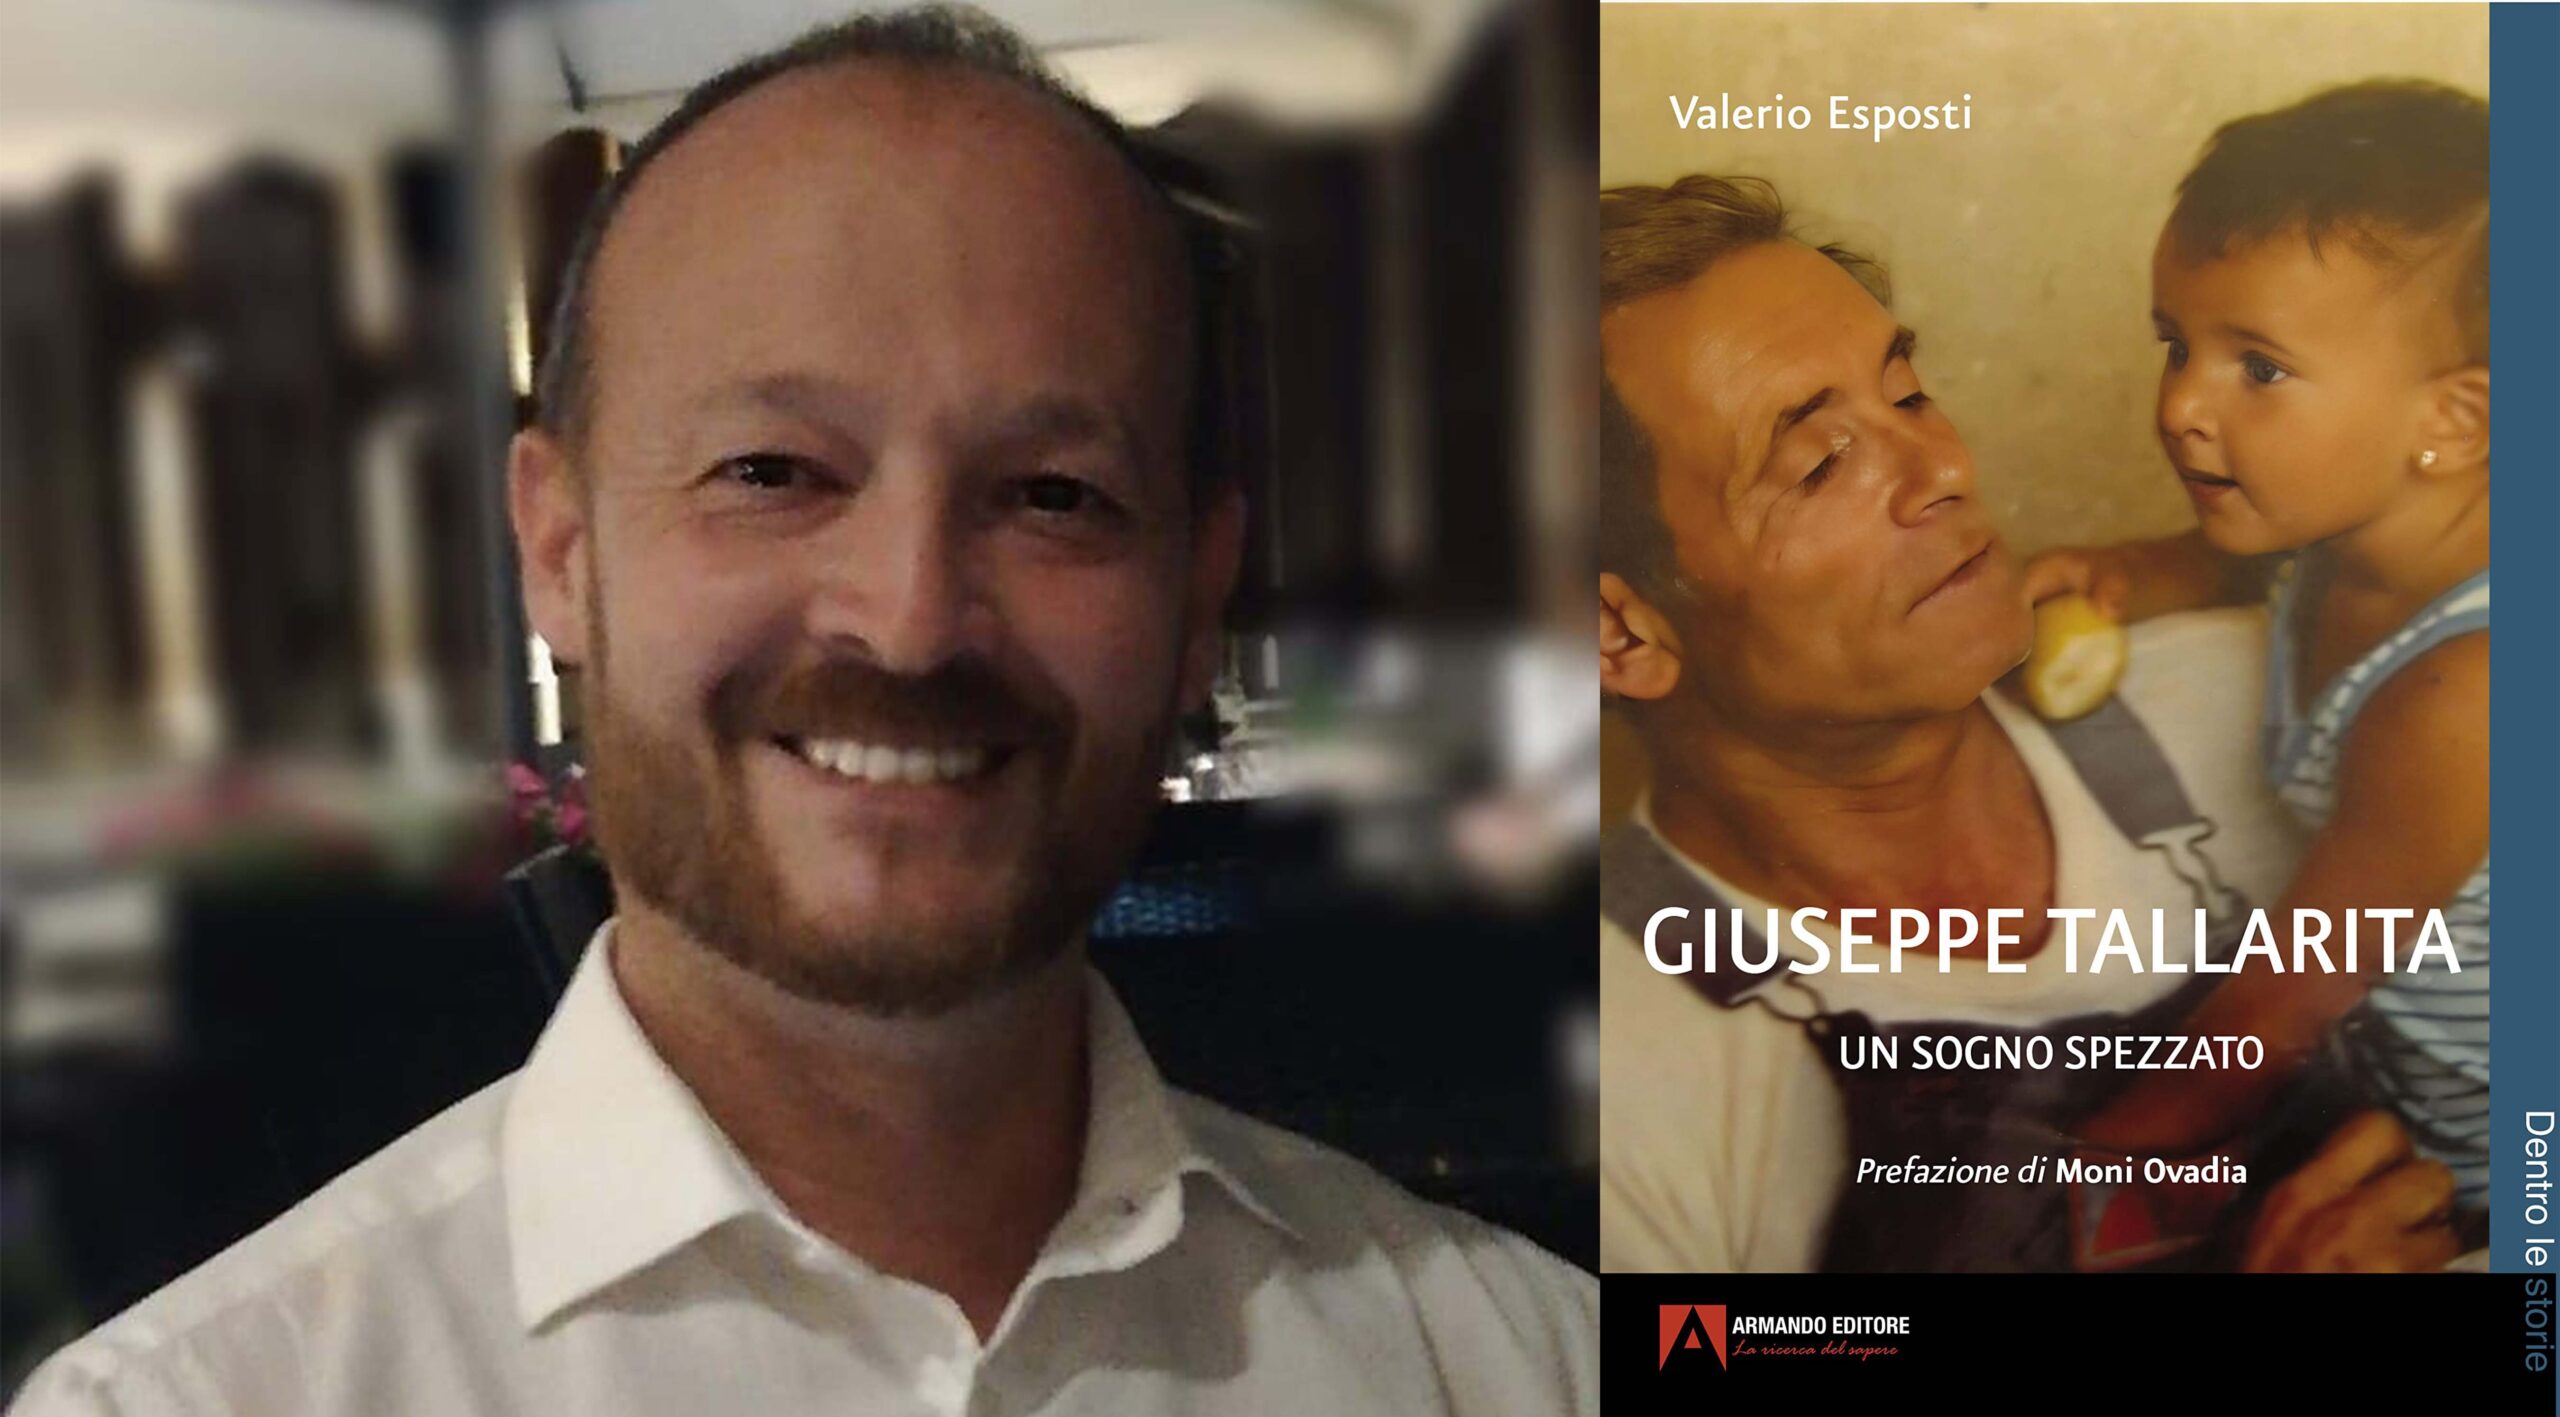 "Giuseppe Tallarita - Un sogno spezzato", il libro di Valerio Esposti con la prefazione di Moni Ovadia